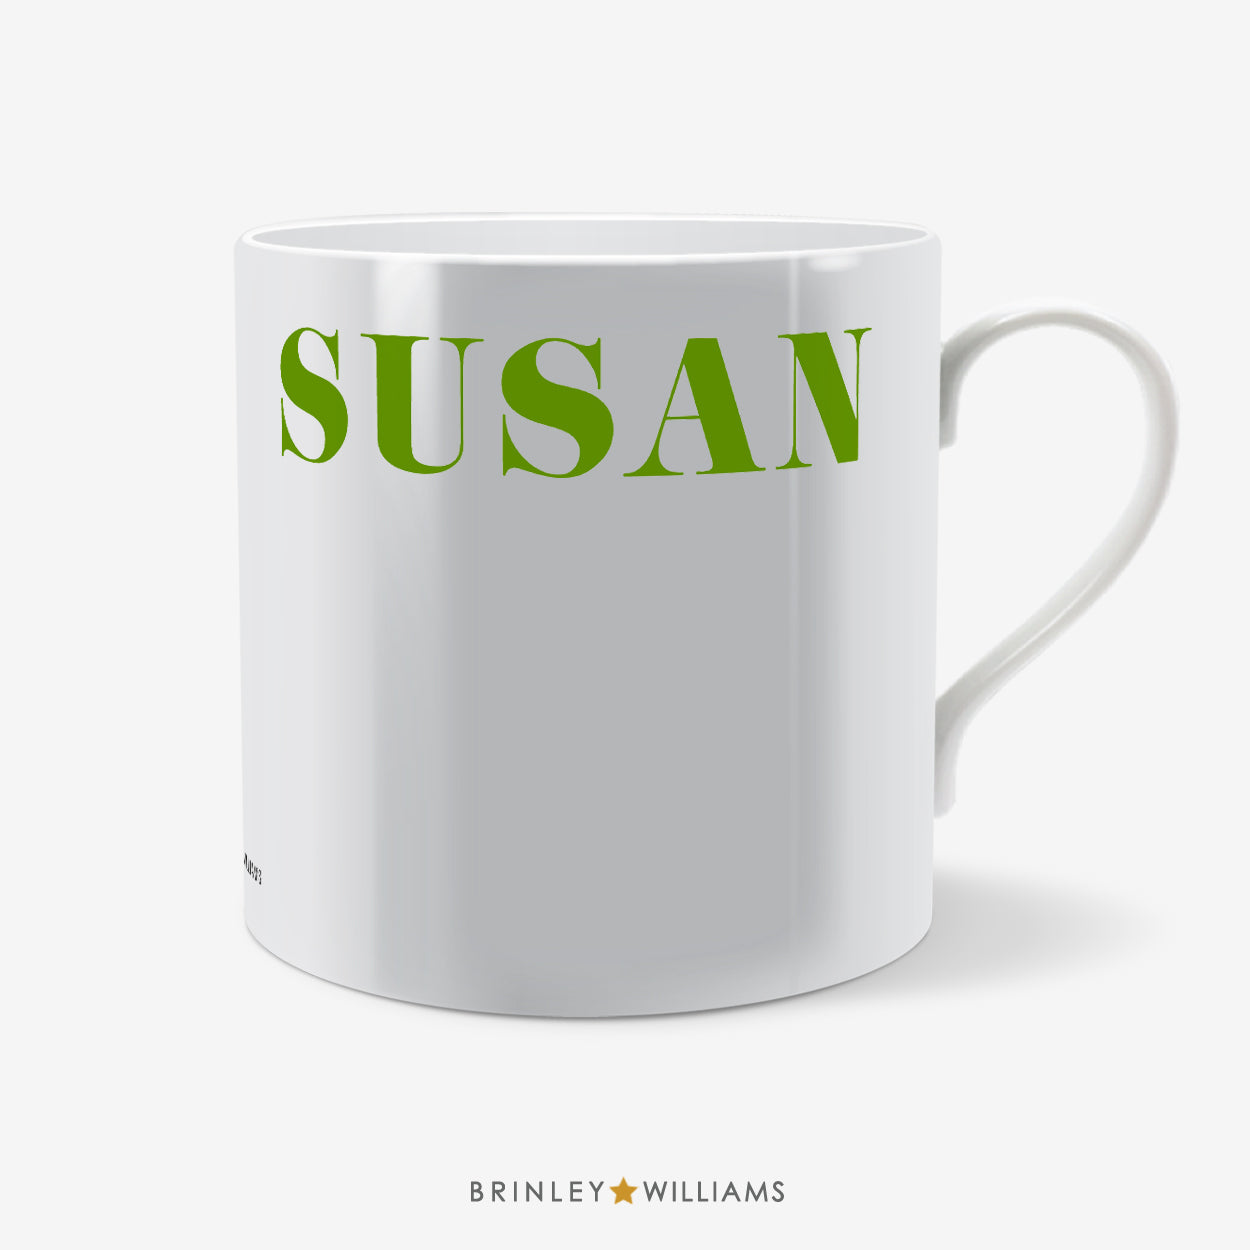 Rim Name Personalised Mug - Green